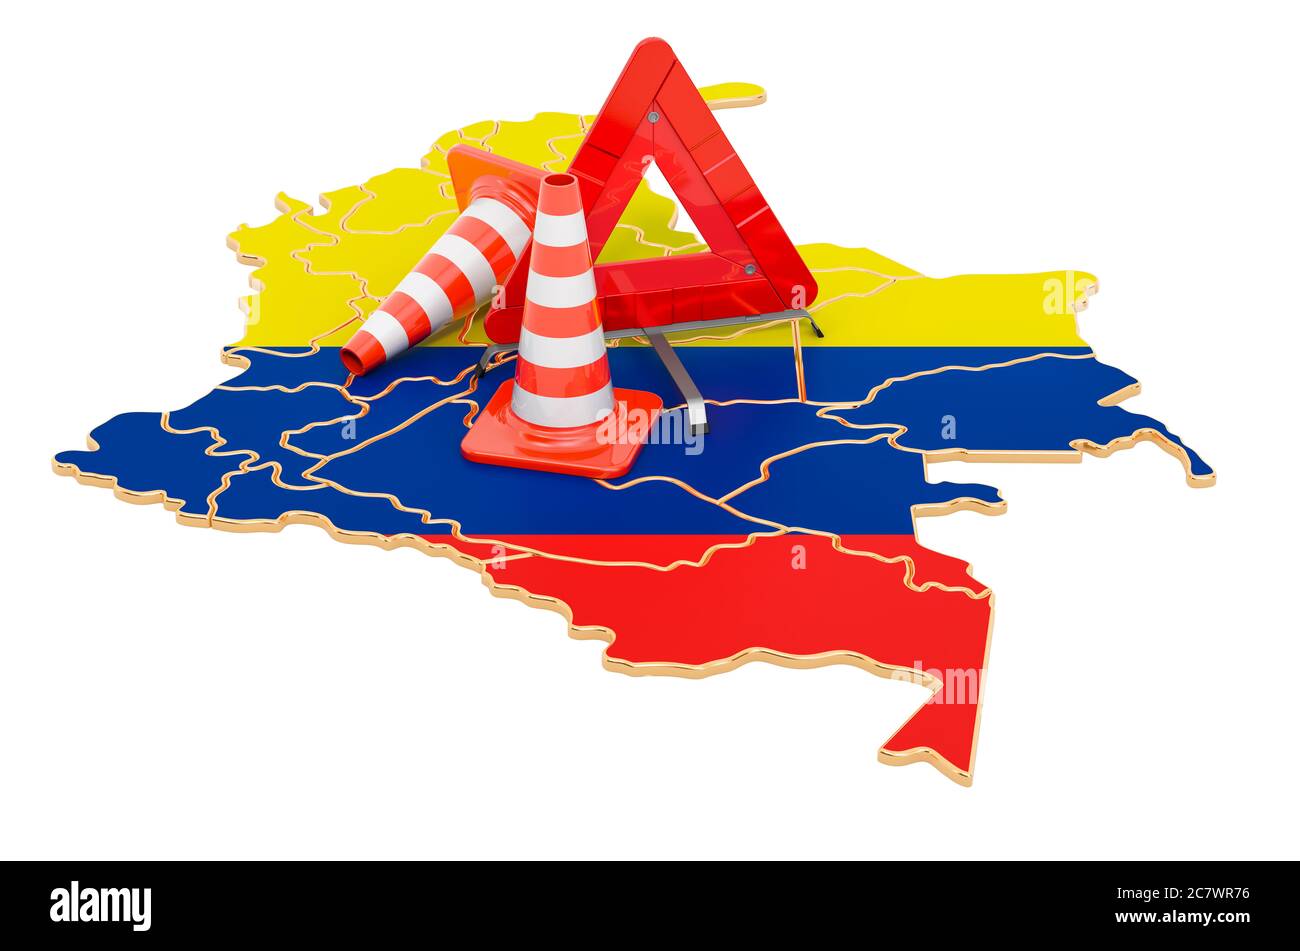 Carte colombienne avec cônes de trafic et triangle d'avertissement, rendu 3D isolé sur fond blanc Banque D'Images